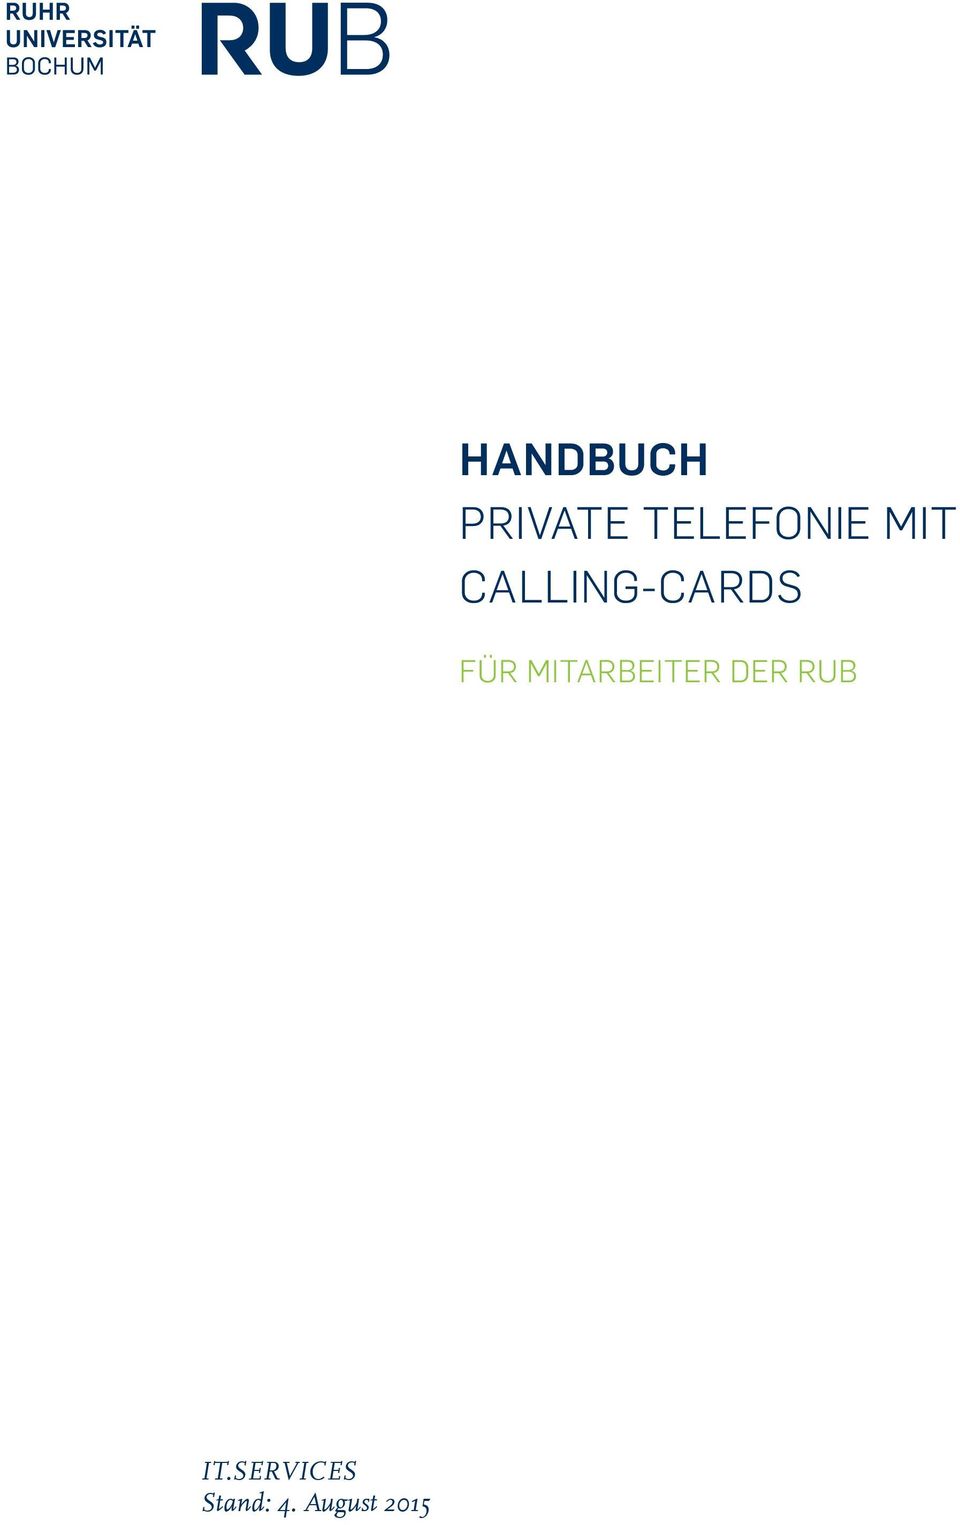 CALLING-CARDS FÜR